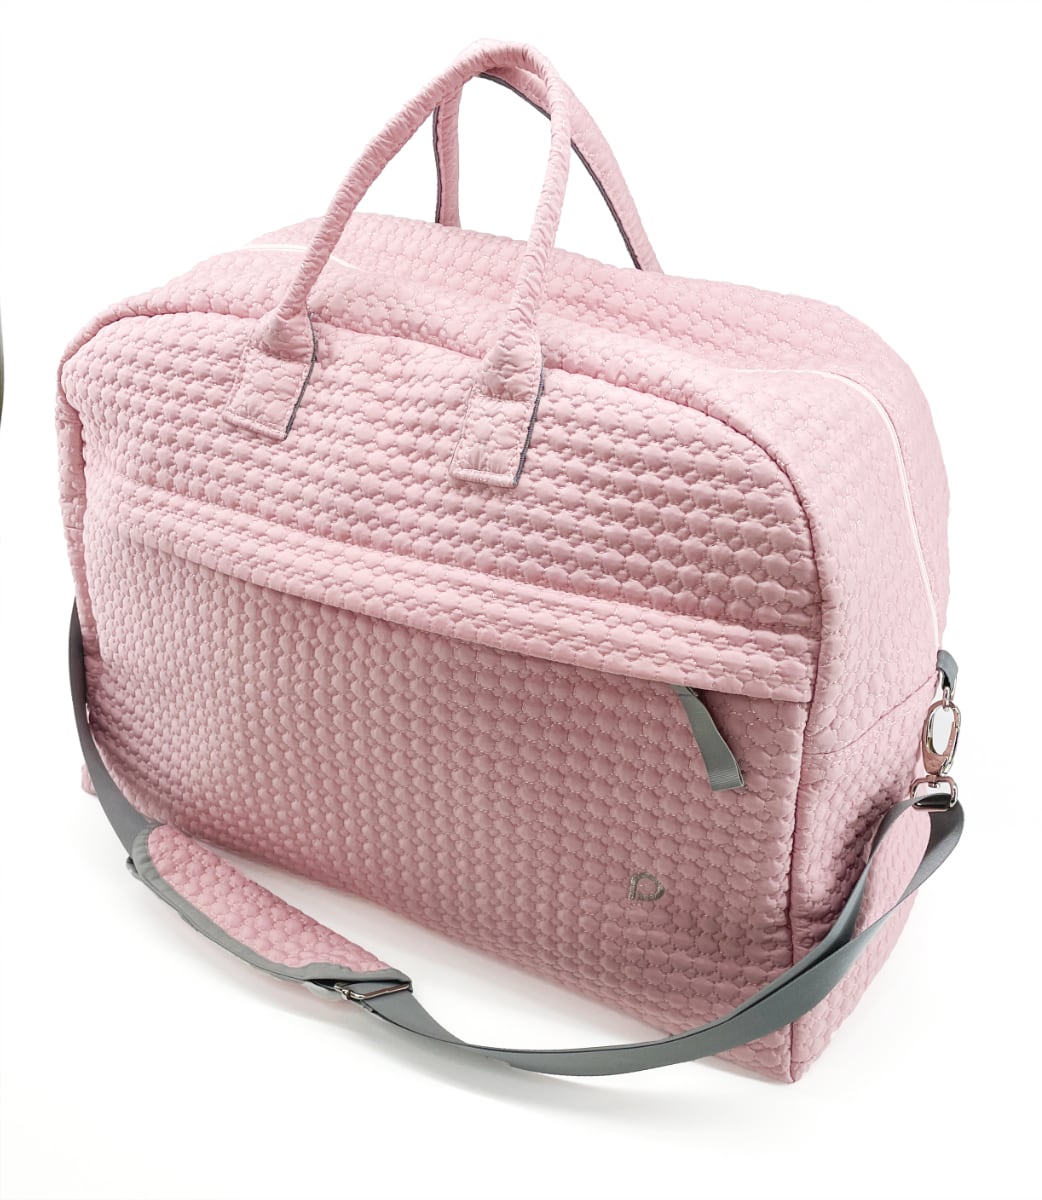 kliknutít zobrazíte maximální velikost obrázku cestovná taška Small Pink Comb